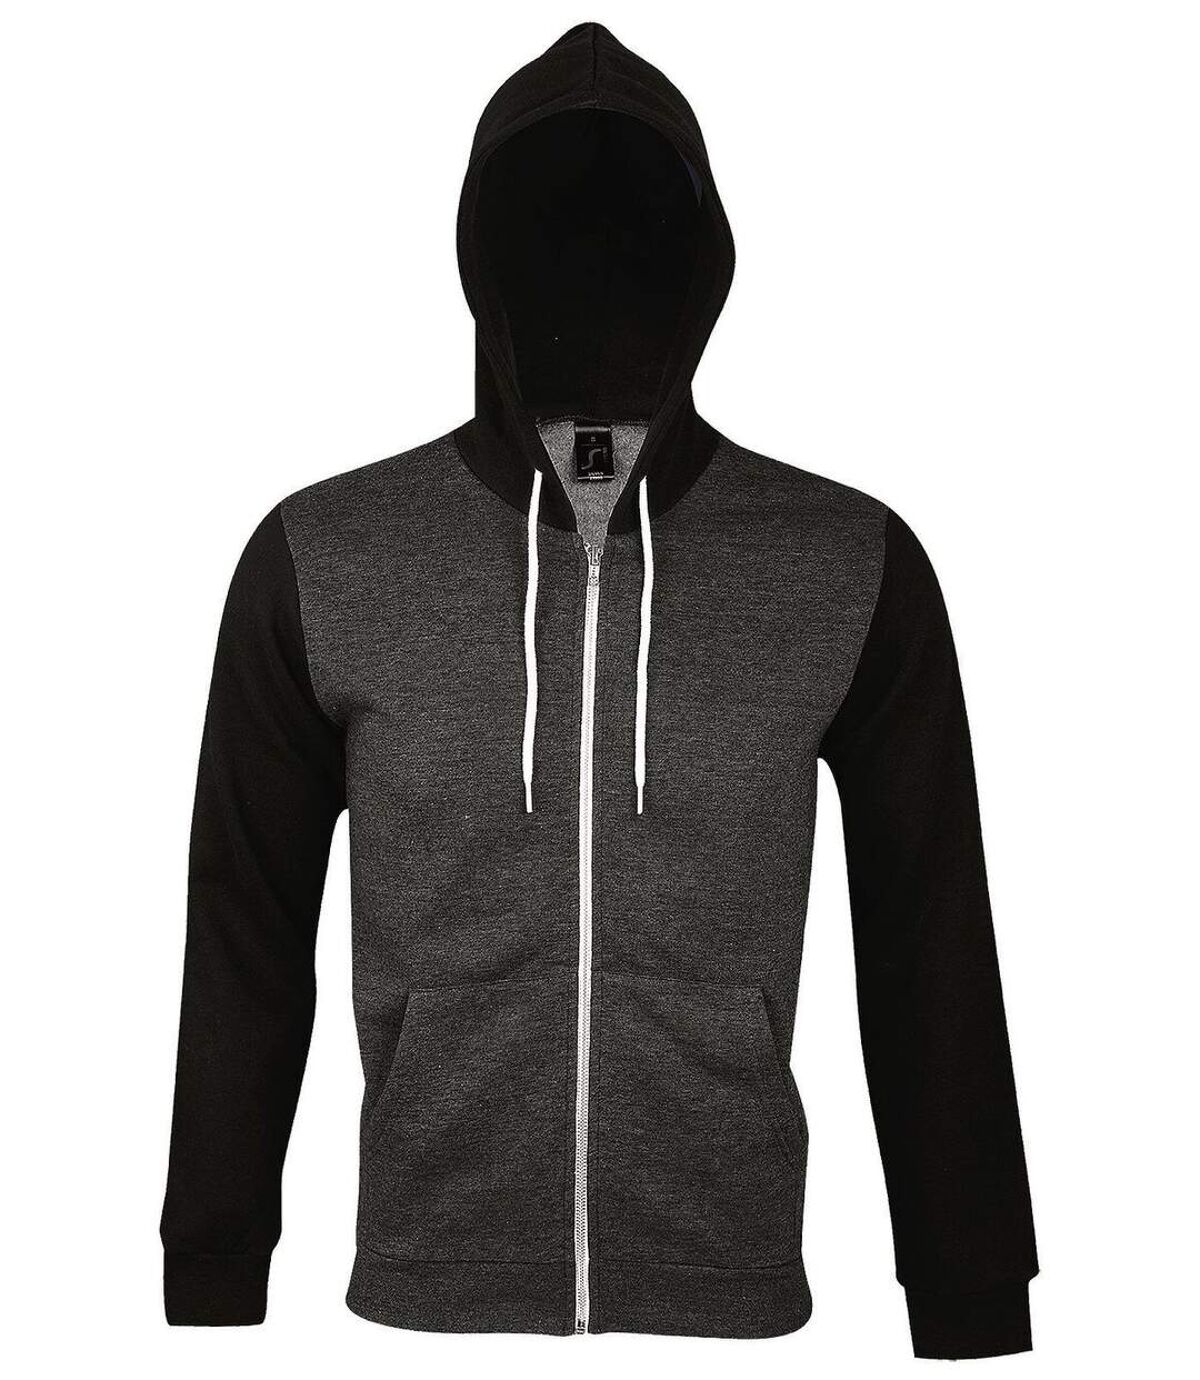 Veste zippée à capuche - Unisexe - 47700 - gris anthracite et noir